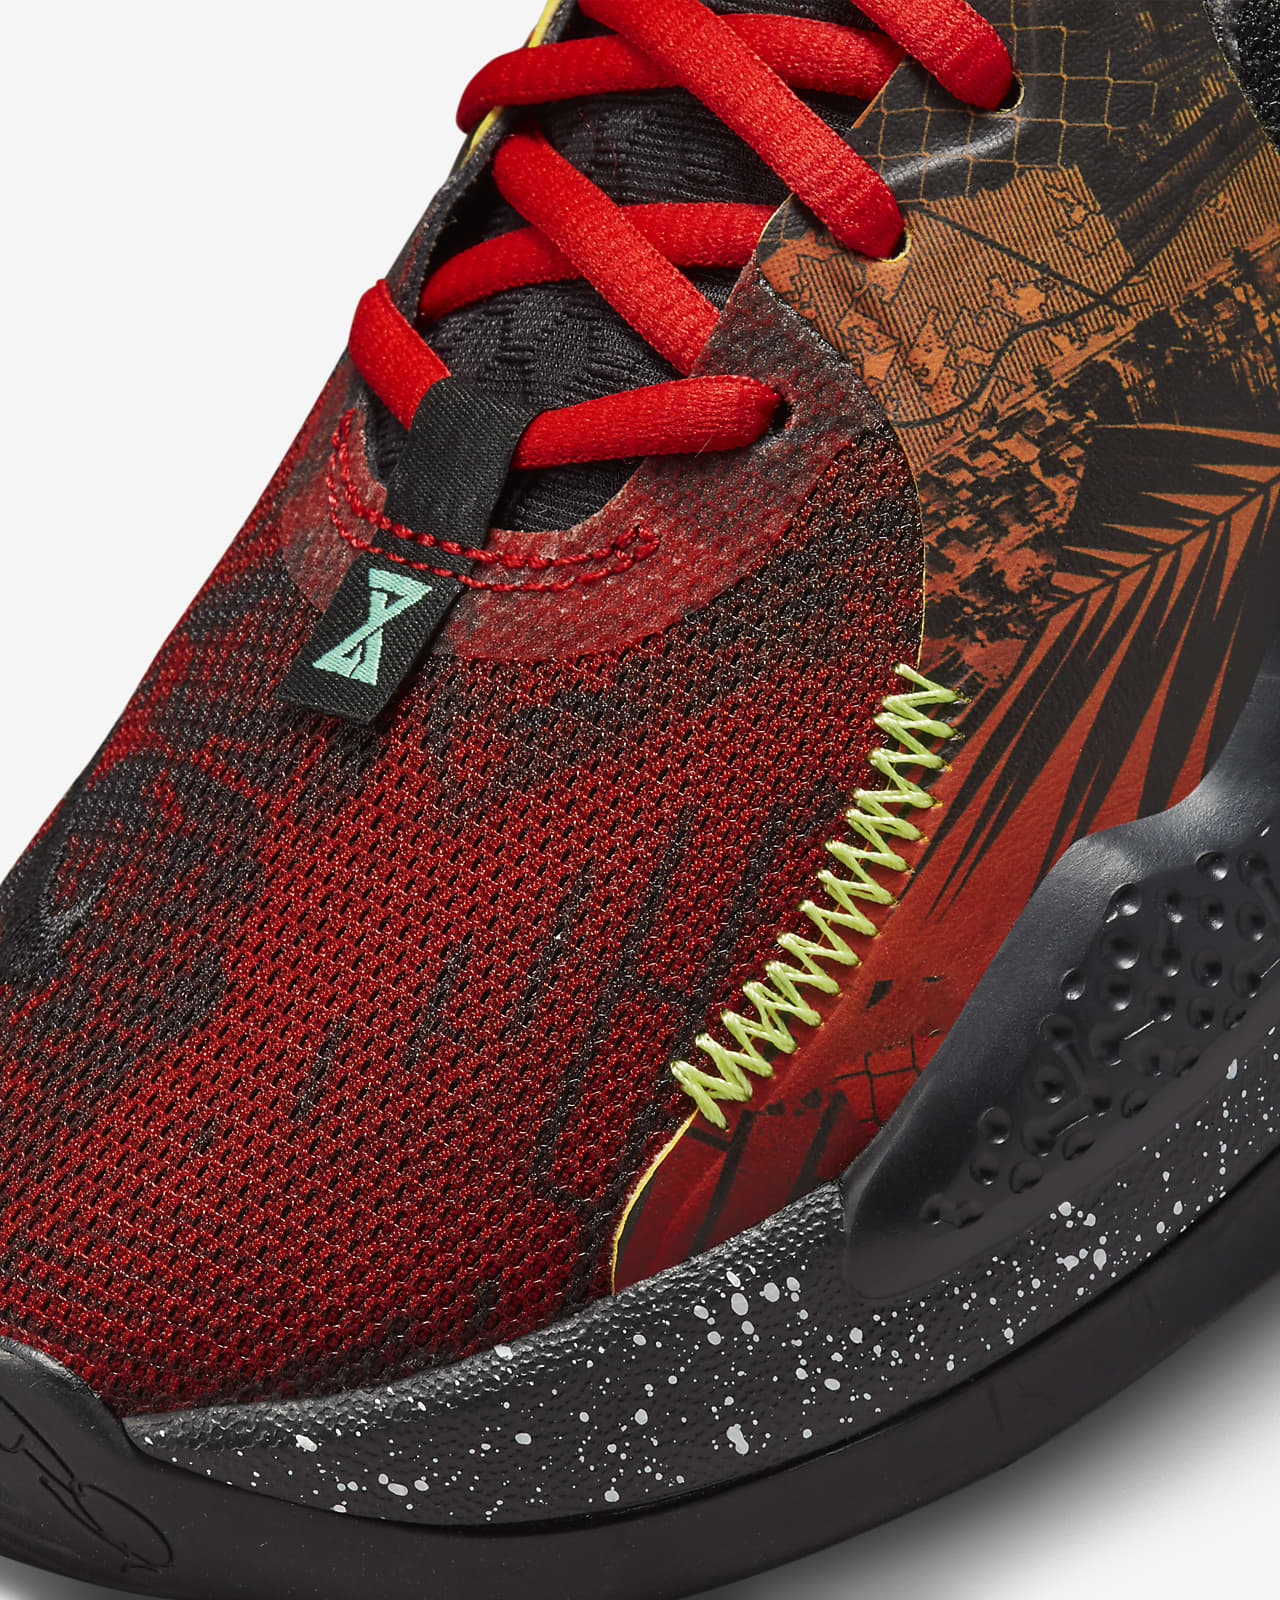 PG 5 EP Basketball Shoes. Nike ID